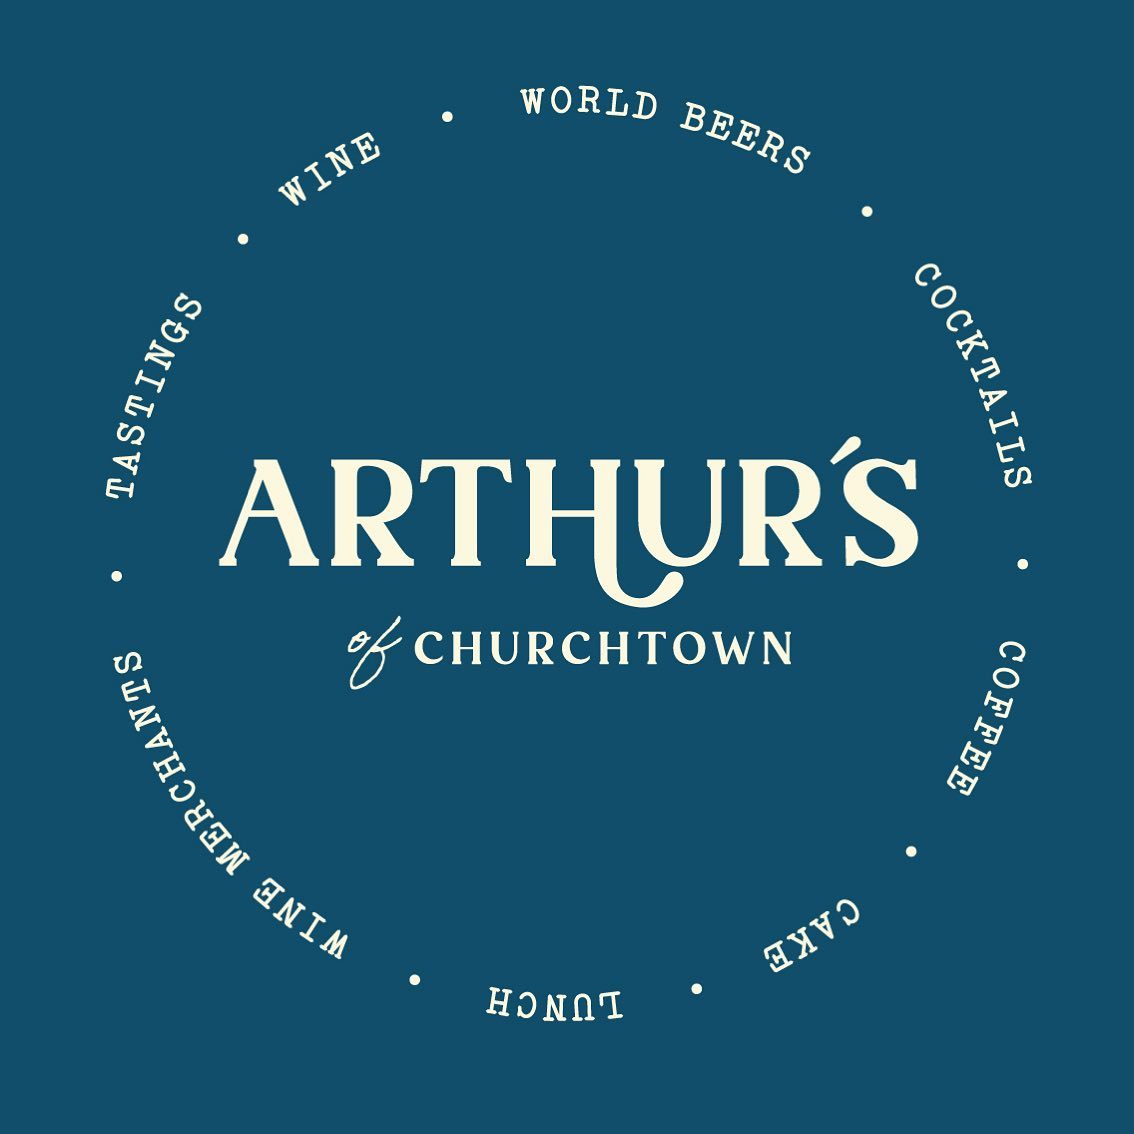 Arthur's of Churchtown